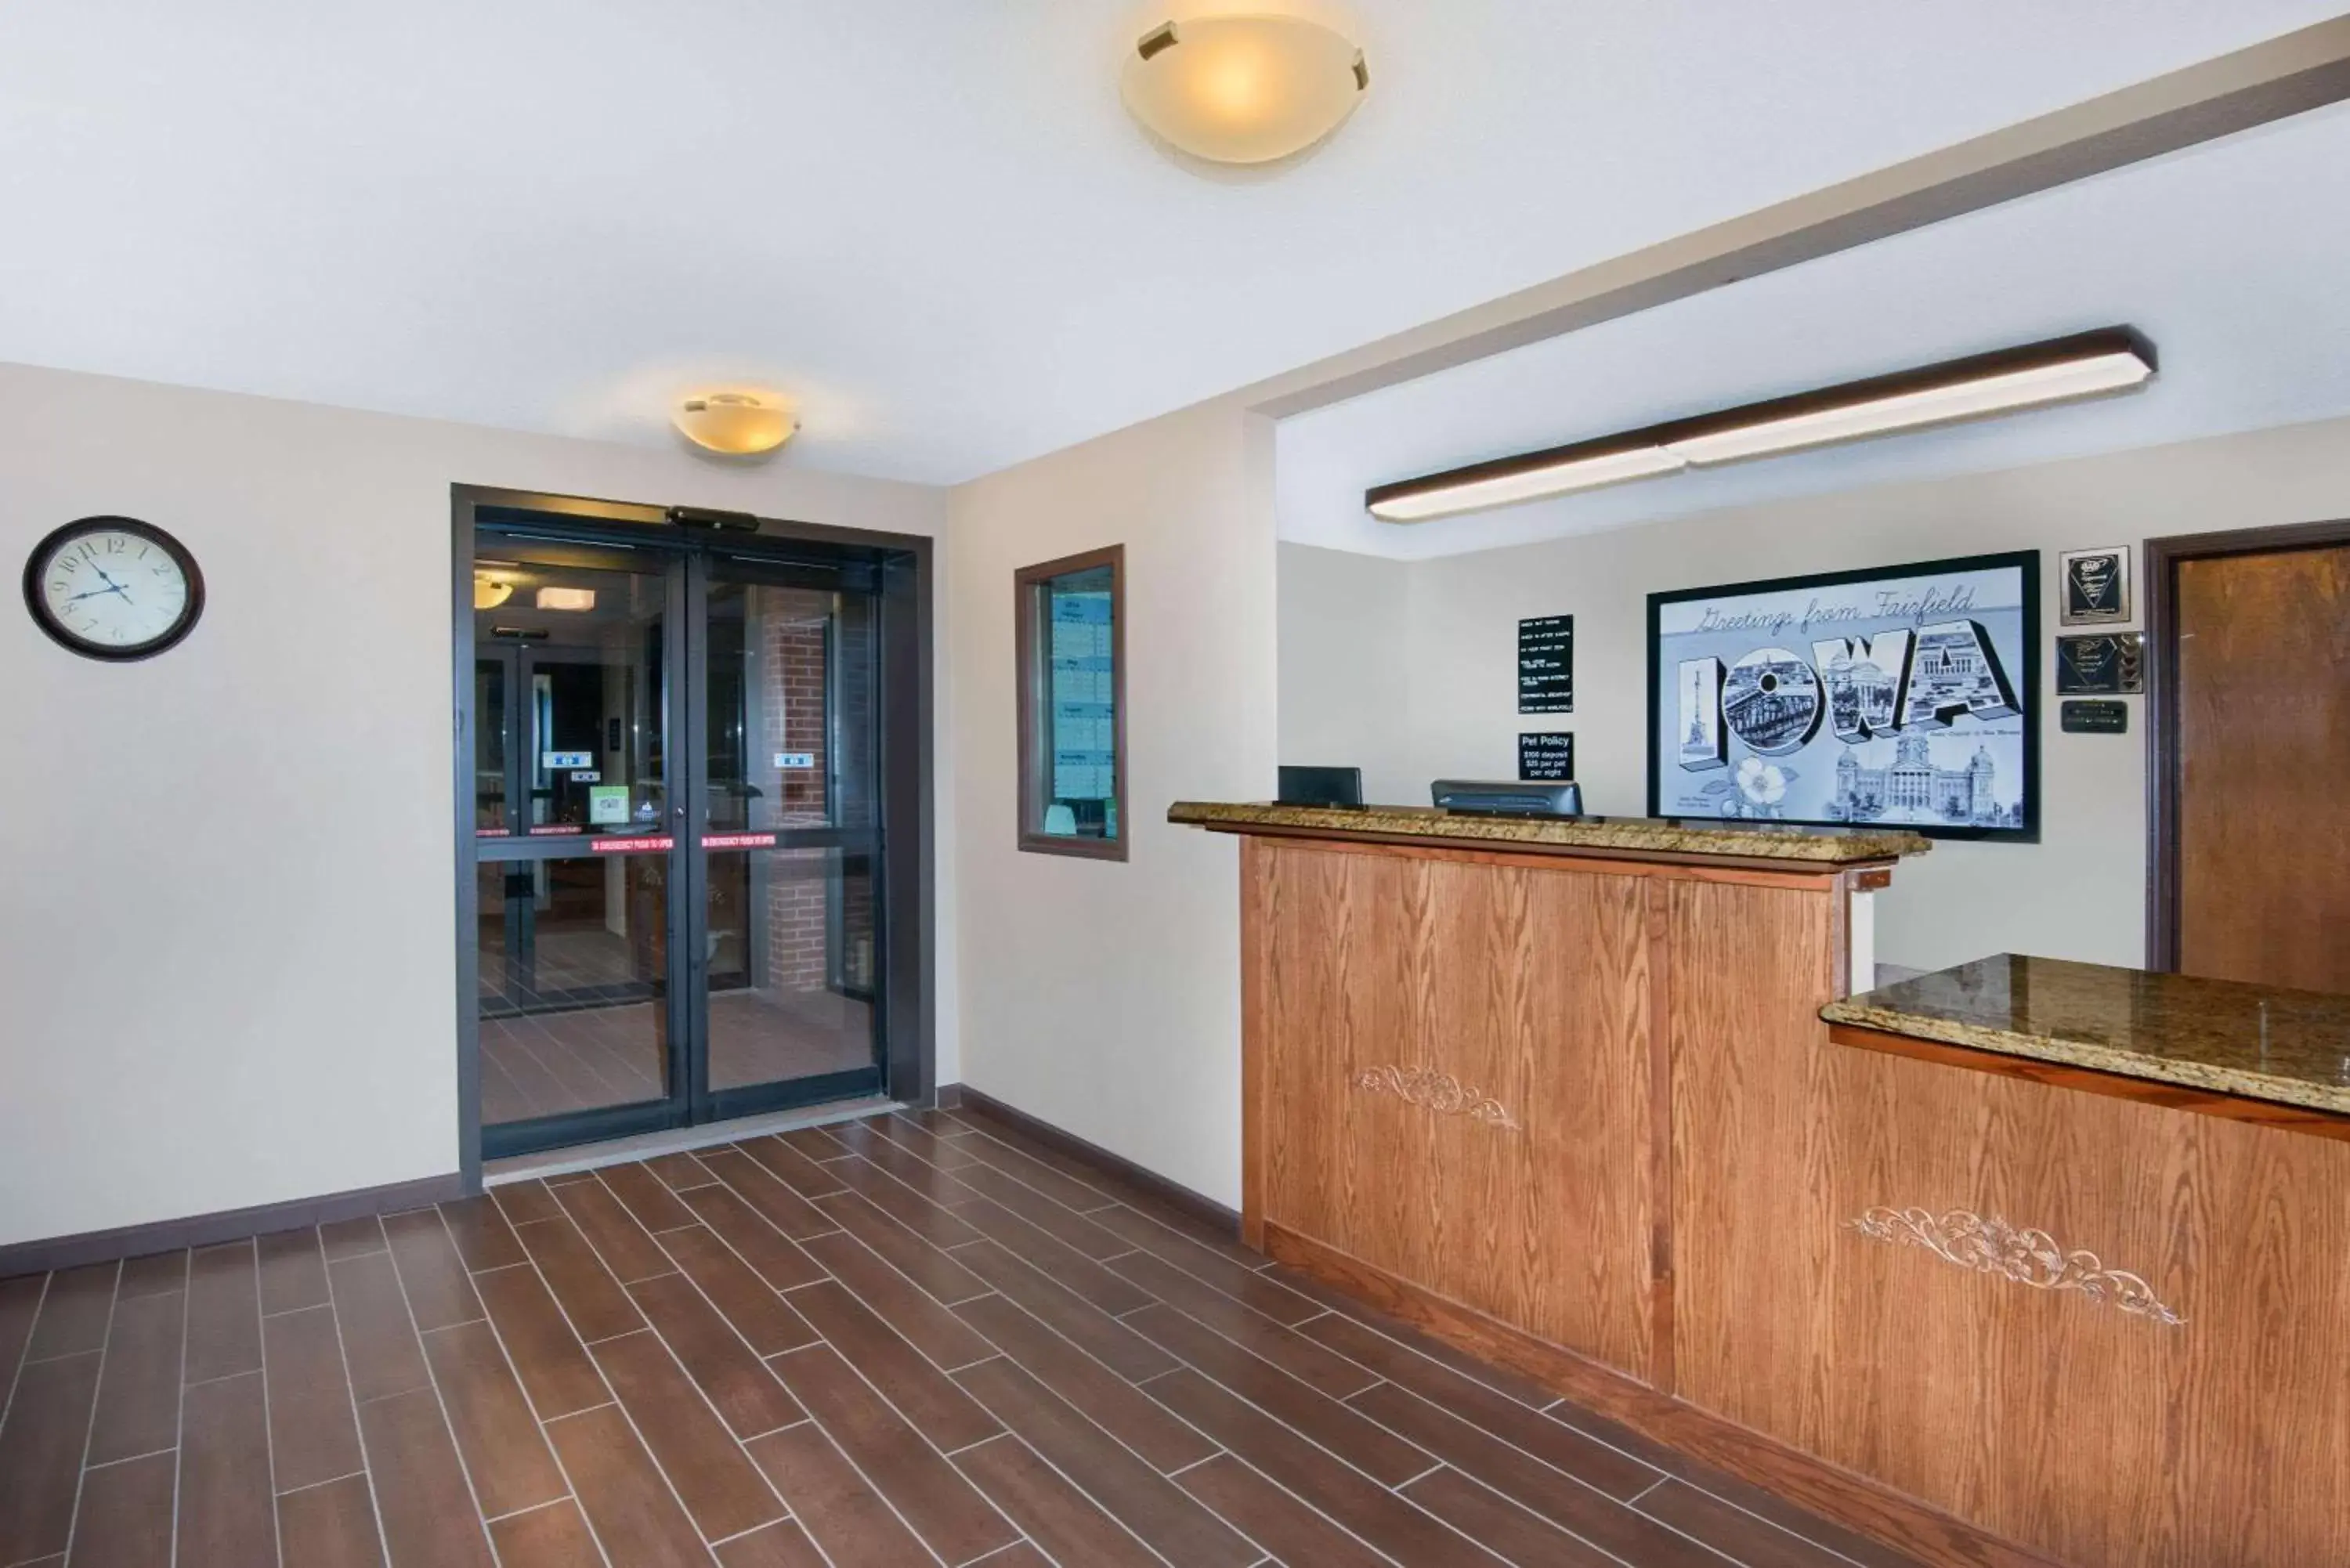 Lobby or reception, Lobby/Reception in Super 8 by Wyndham Fairfield